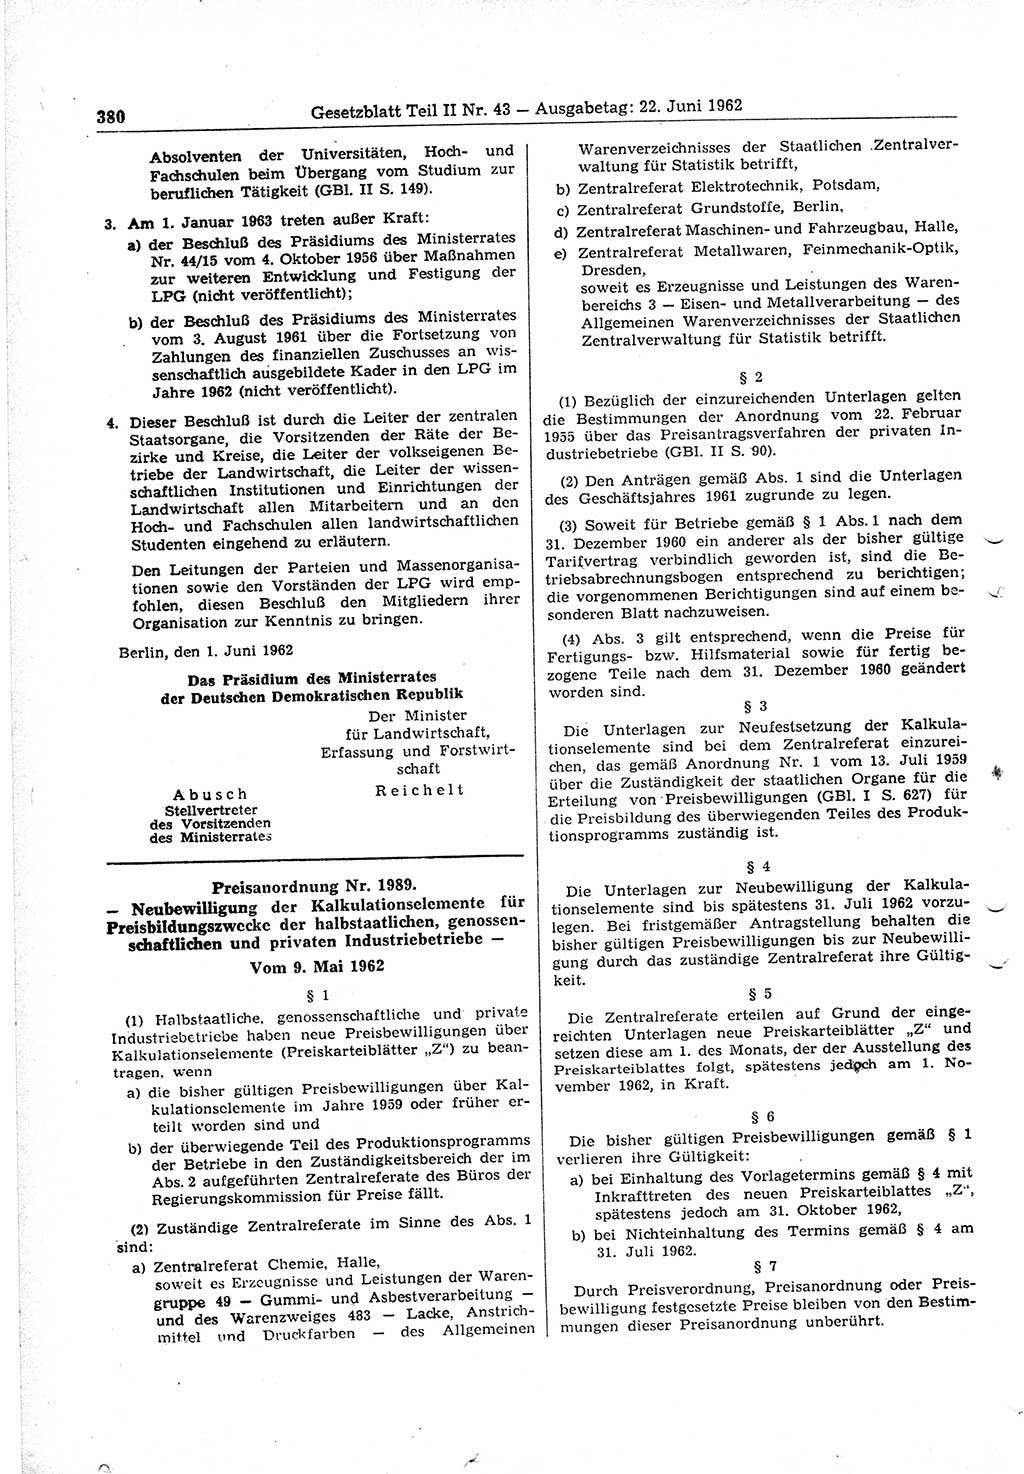 Gesetzblatt (GBl.) der Deutschen Demokratischen Republik (DDR) Teil ⅠⅠ 1962, Seite 380 (GBl. DDR ⅠⅠ 1962, S. 380)